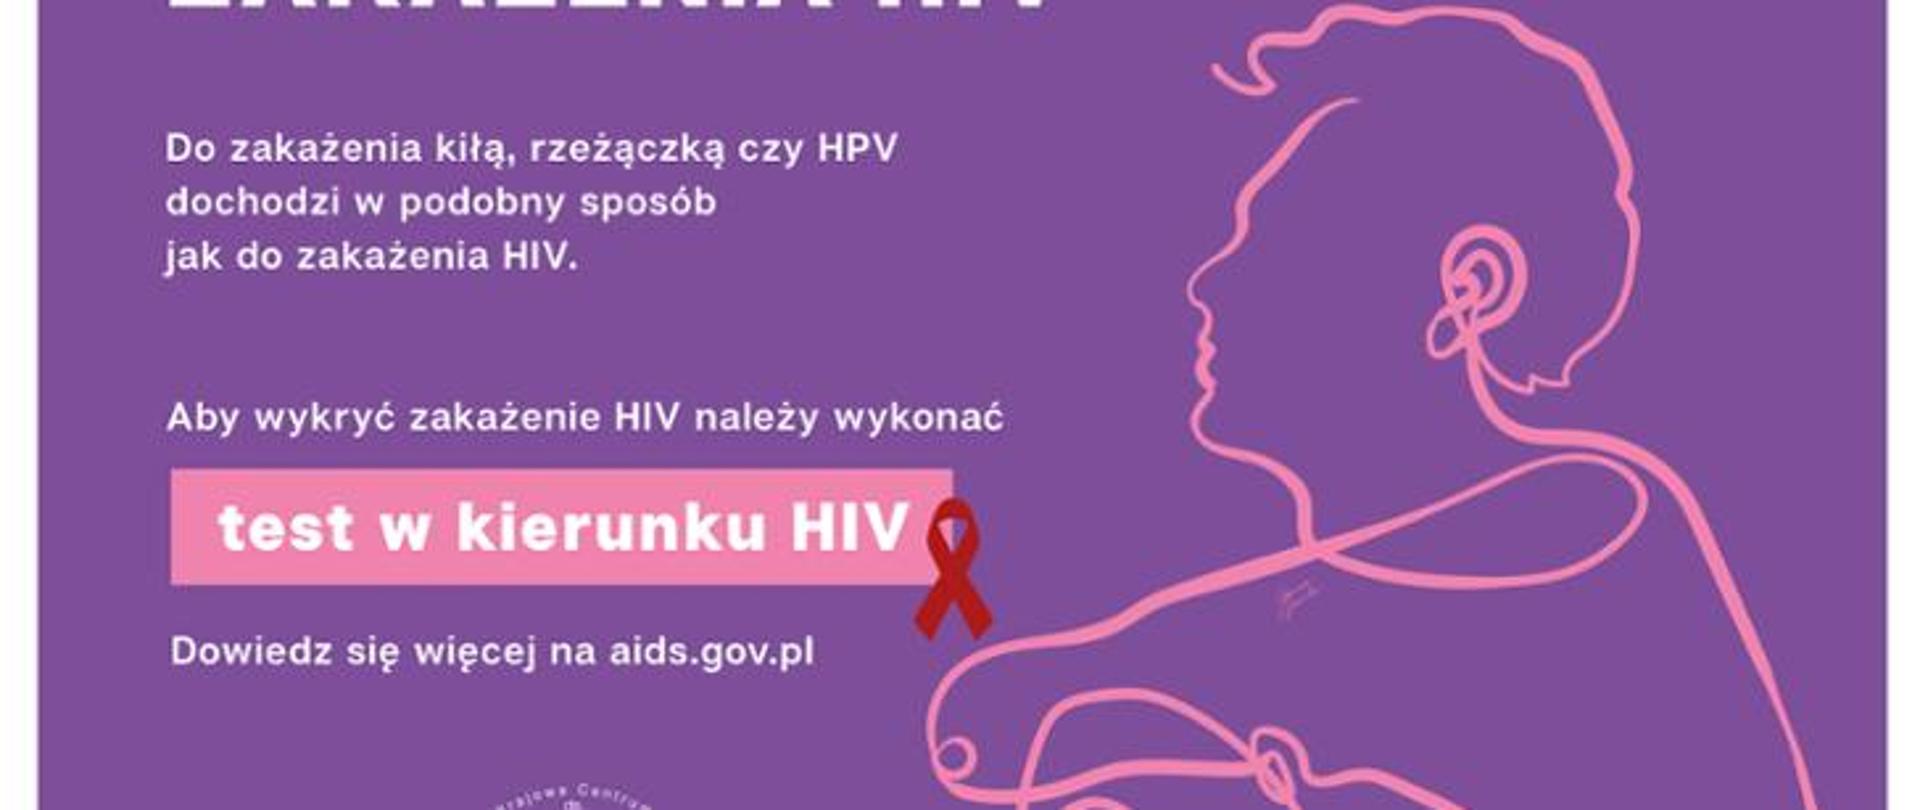 grafika do artykułu hiv aids